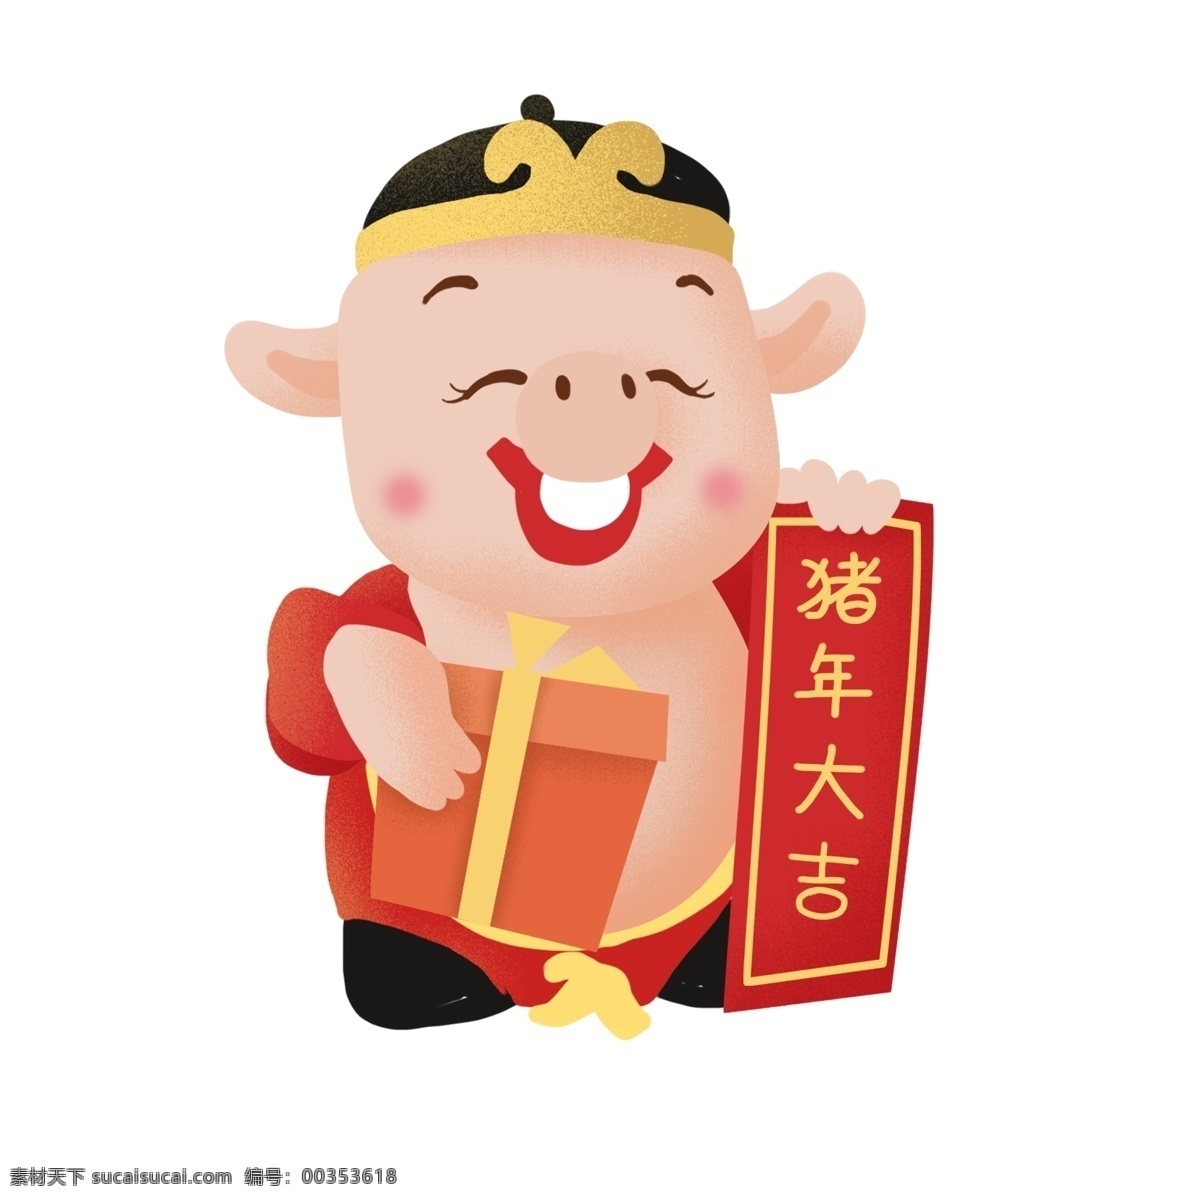 猪年 大吉 卡通 拜年 猪八戒 插画 喜庆 春节 礼物 对联 小猪 新年 2019年 过年 小猪形象 猪年形象